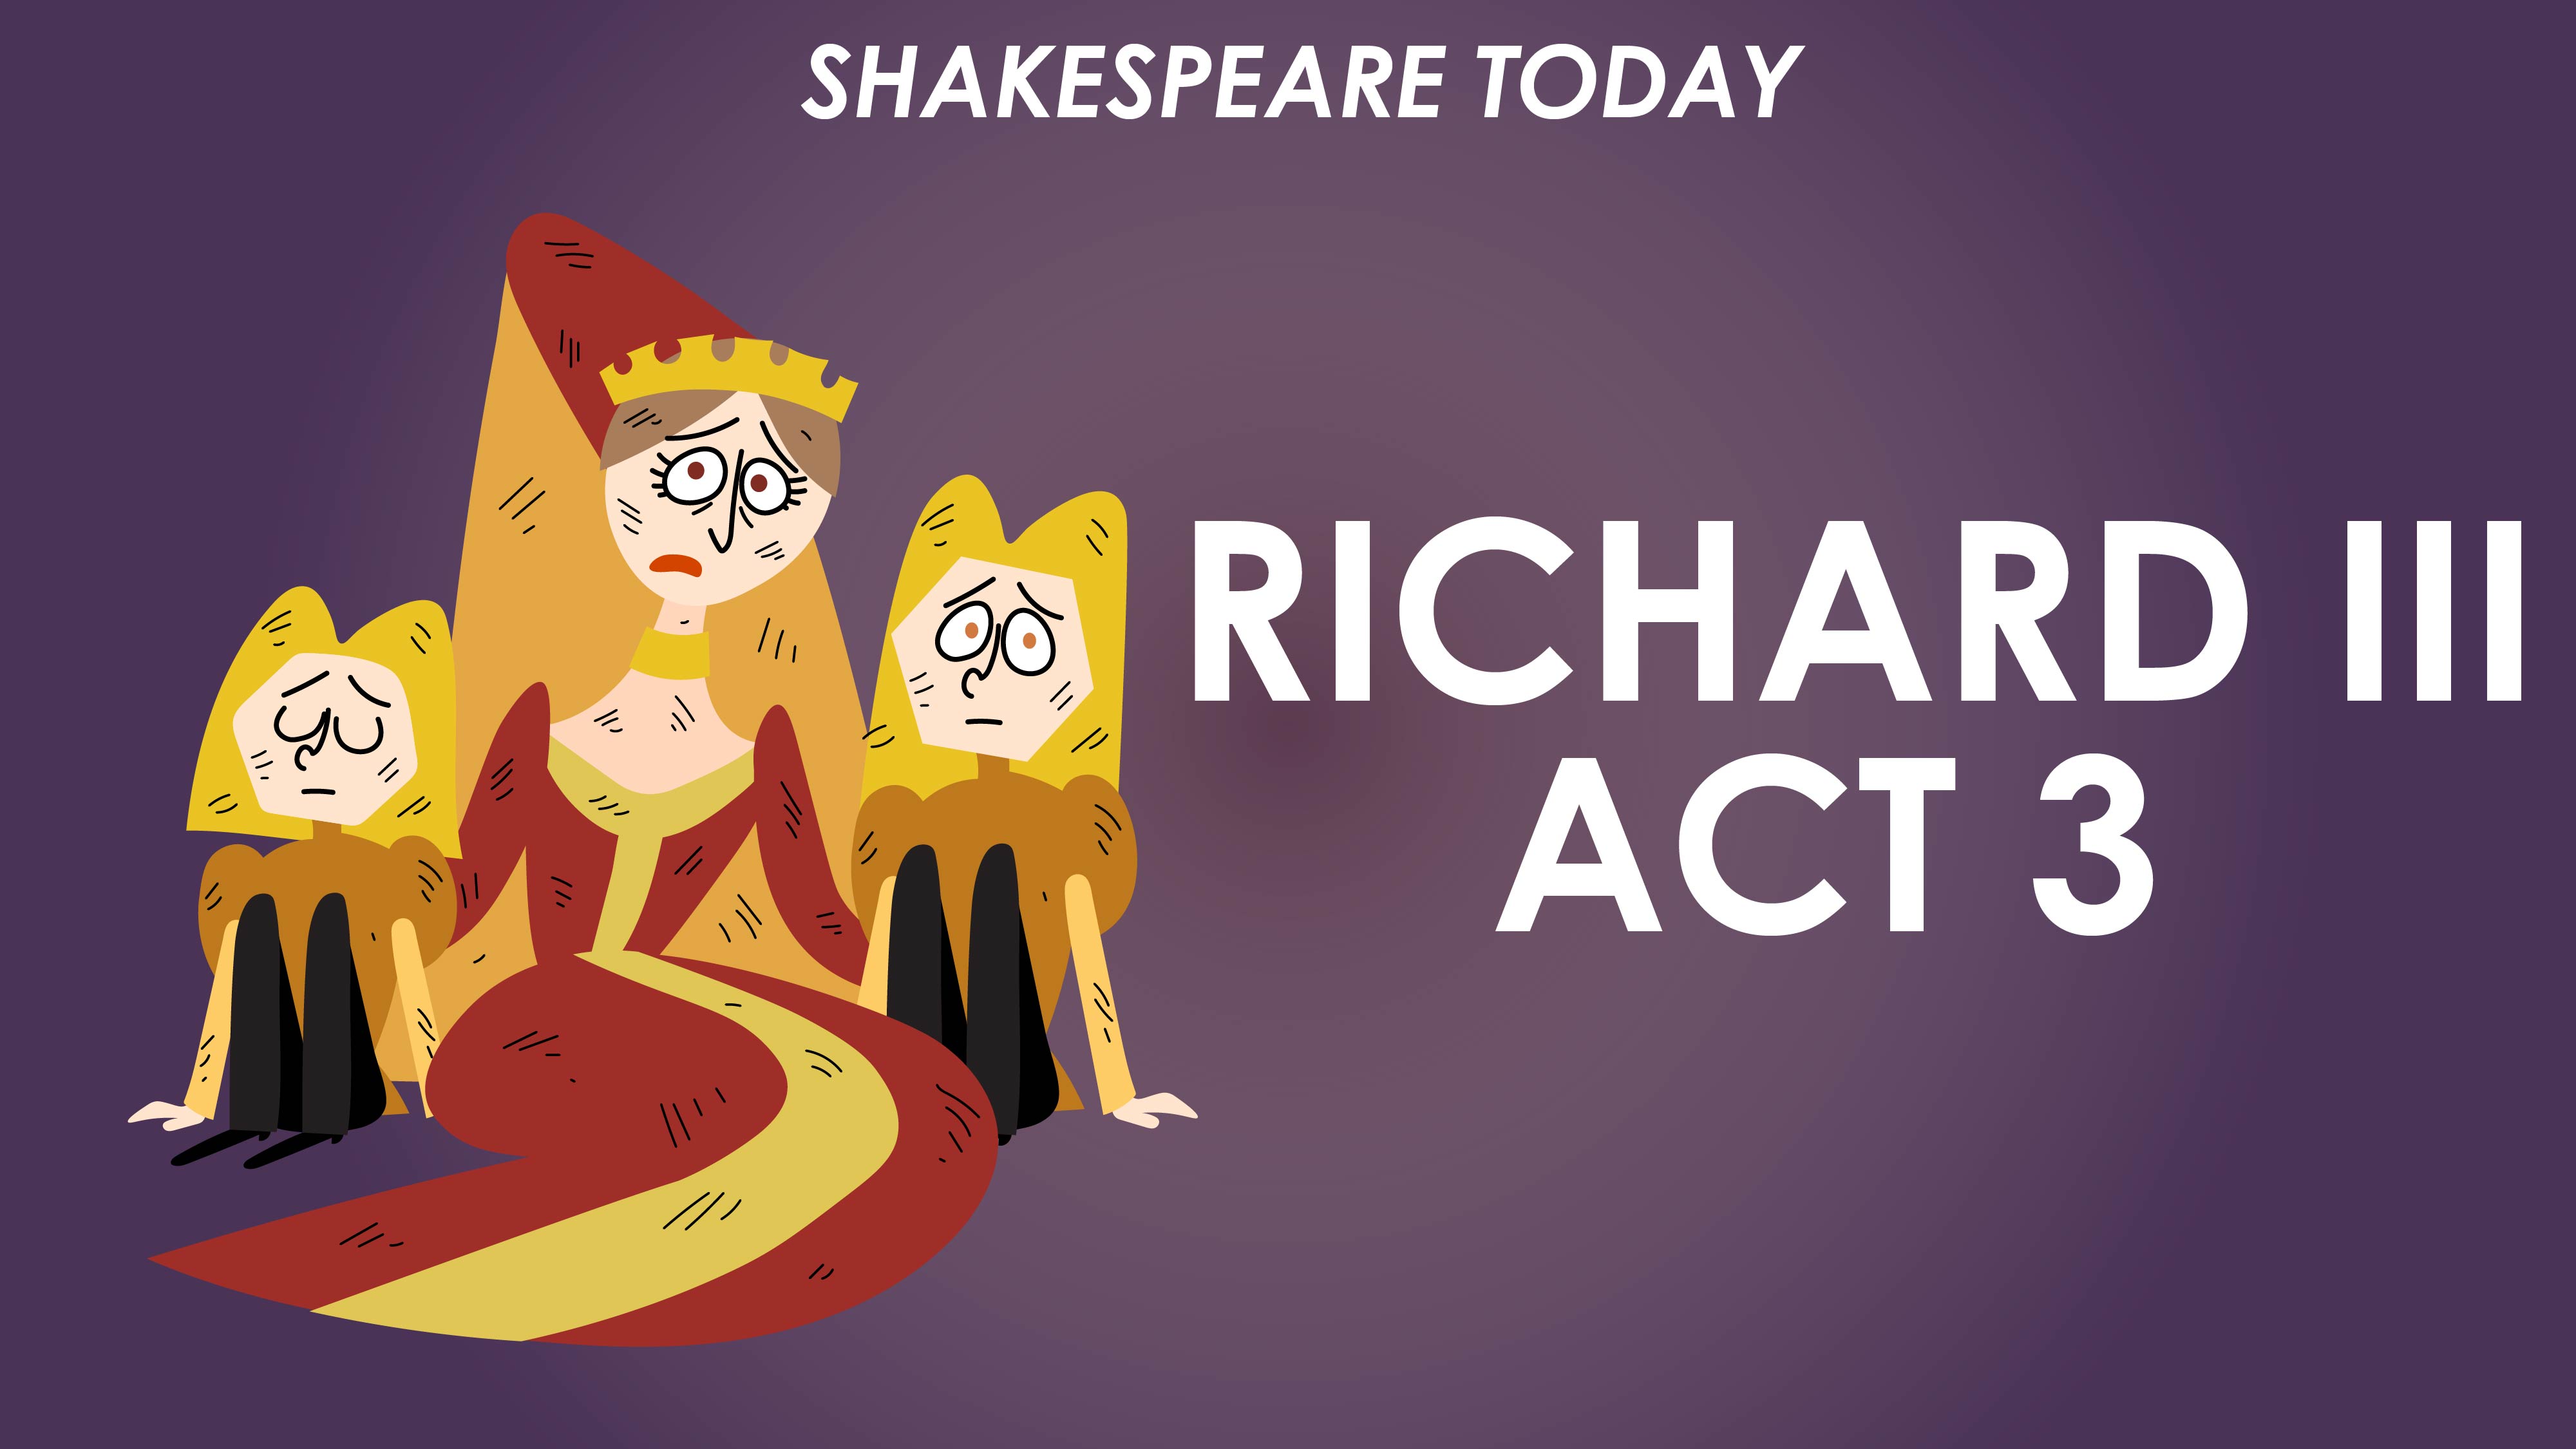 Richard III Act 3 Summary - Shakespeare Today Series